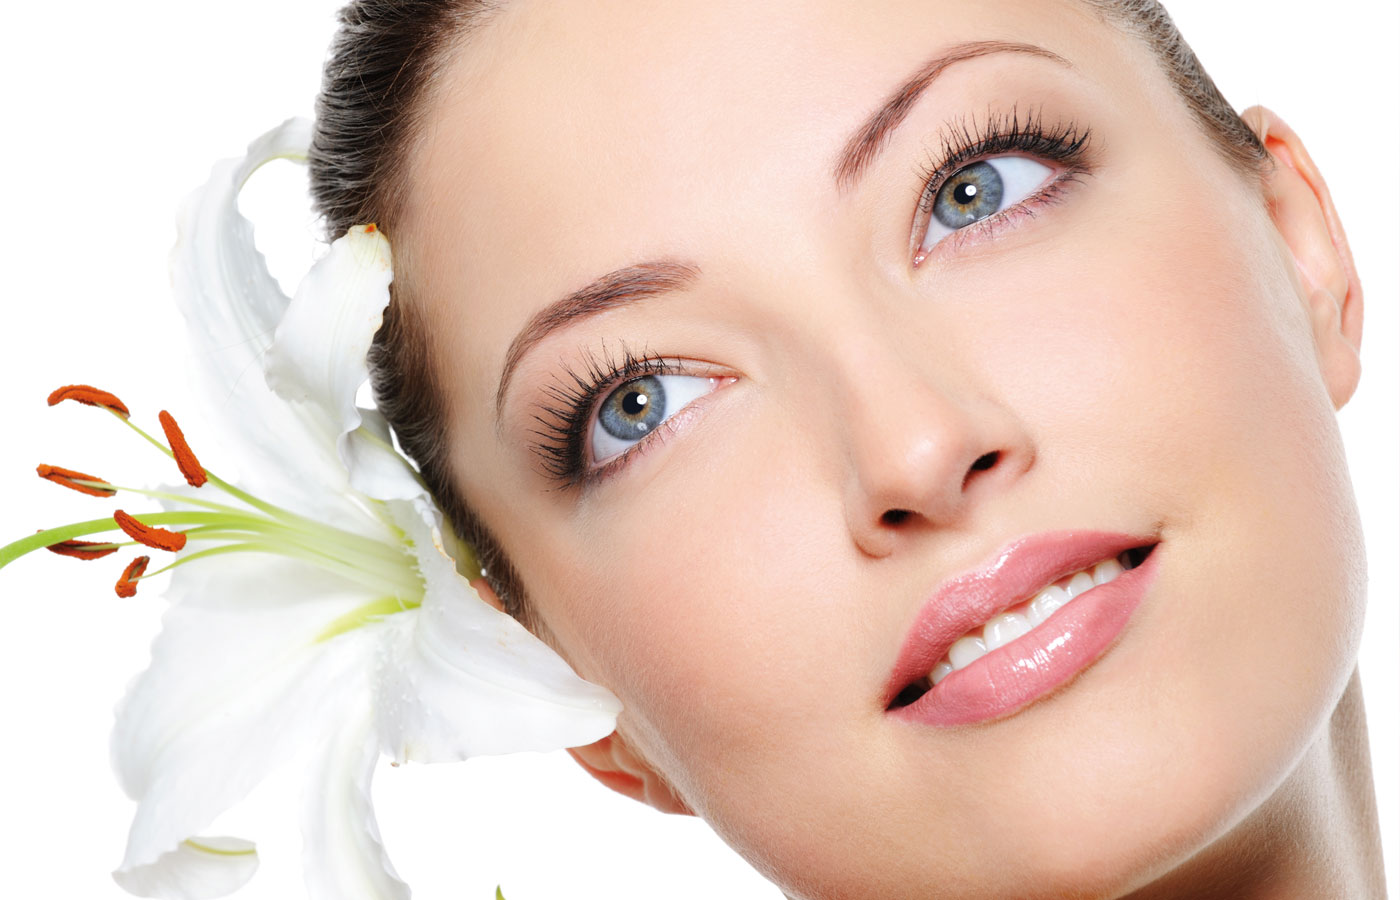 Fr Damen bieten wir VISIA-Hautanalyse, Gesichtsbehandlungen, Haarentfernung und mehr.